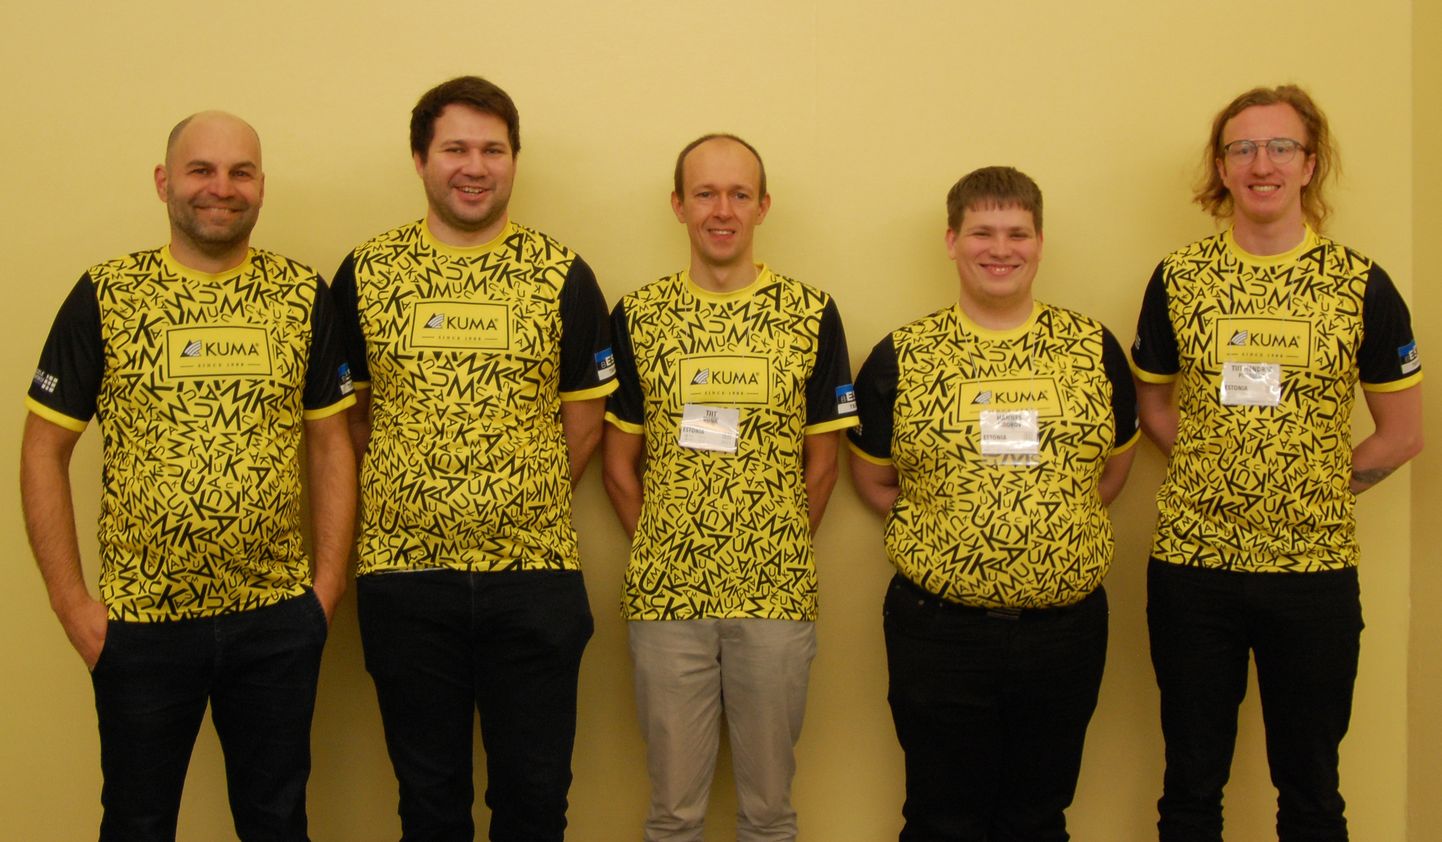 Fotol Eesti A-koondis vasakult: kapten Jaanus Laidna, Tauri Purk, Tiit Vunk, Hannes Sidorov ja Tiit Hendrik Piibeleht vahetult enne võistluse algust.